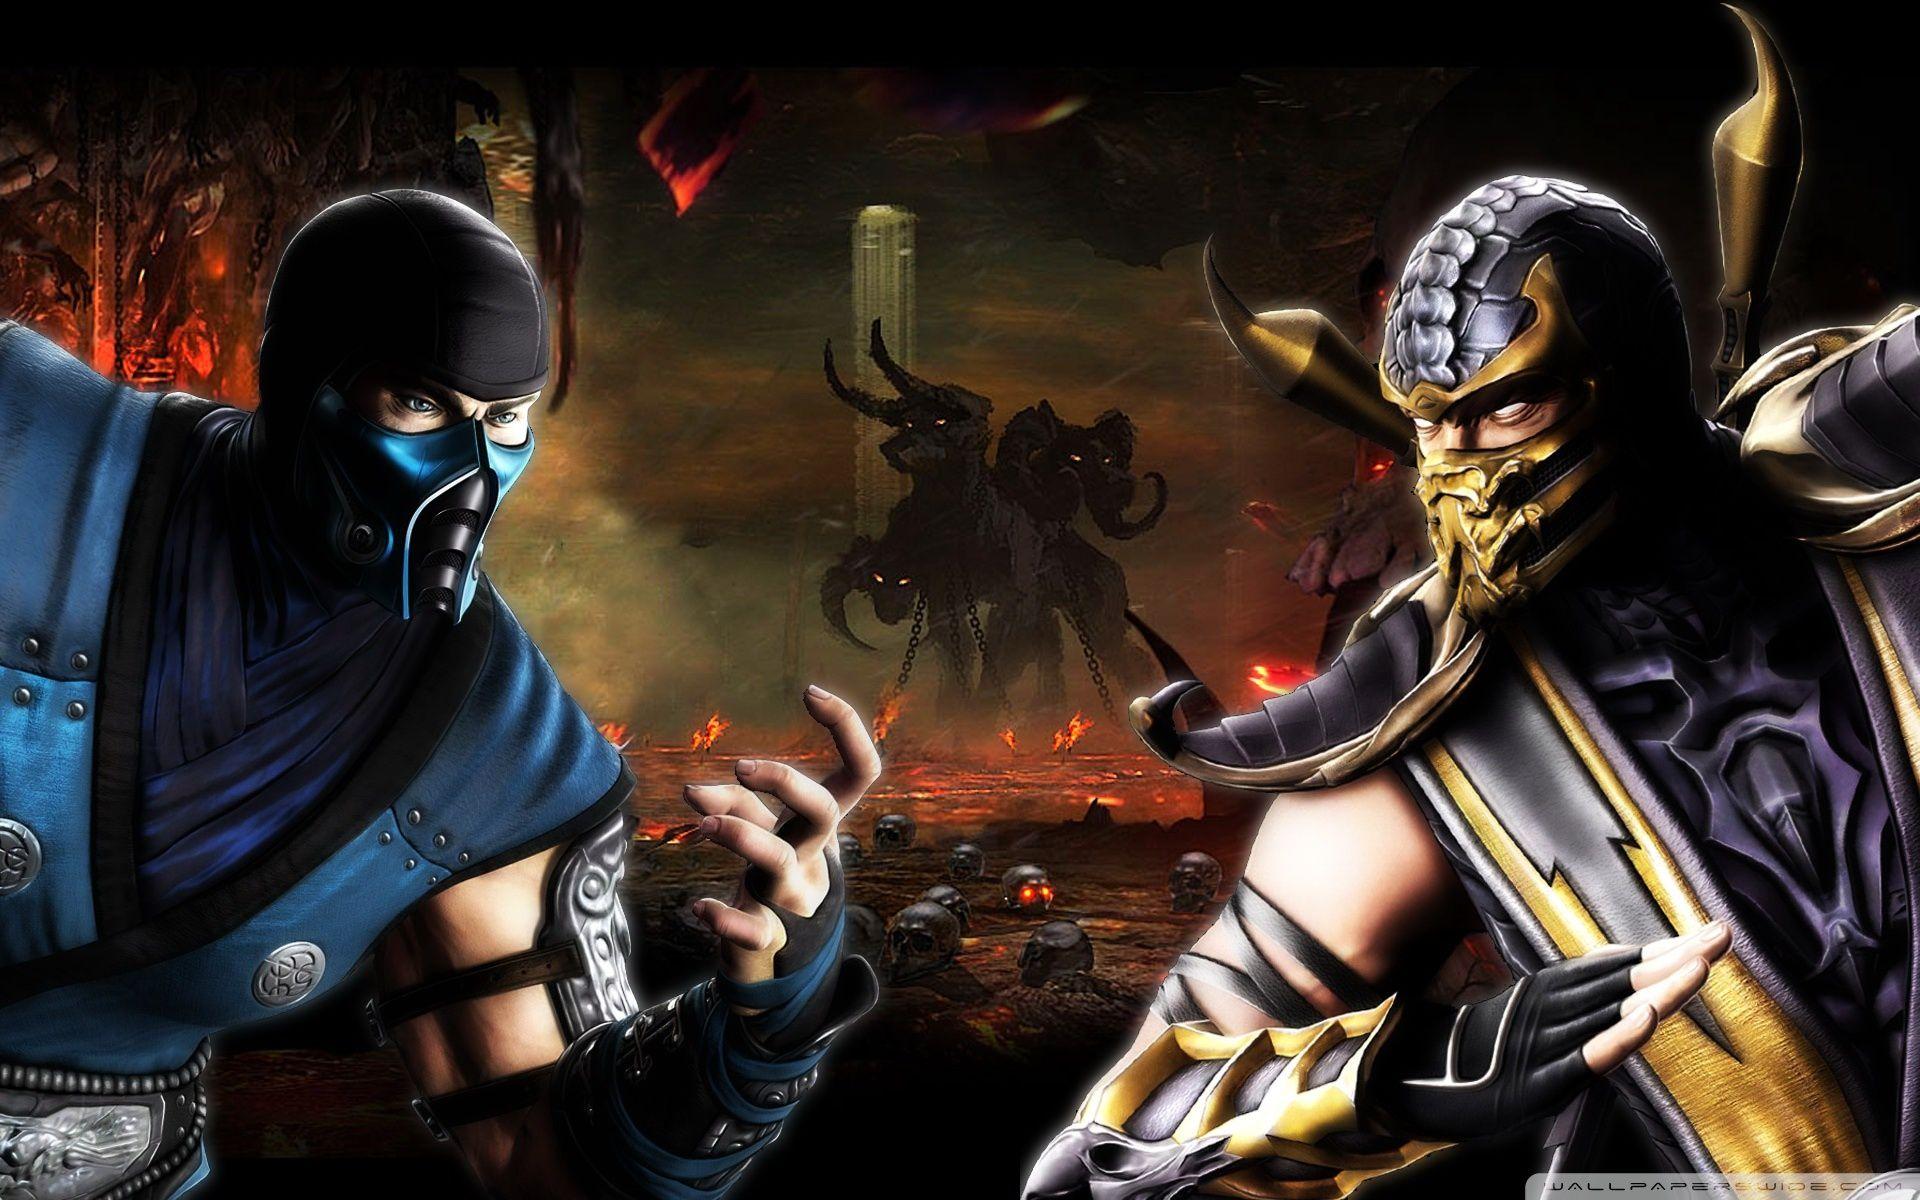 Мортал комбат играть с другом. Scorpion vs sub Zero MK 11. Mortal Kombat 9 саб Зиро. Скорпион против саб Зиро. Сабзиро мортал комбат.